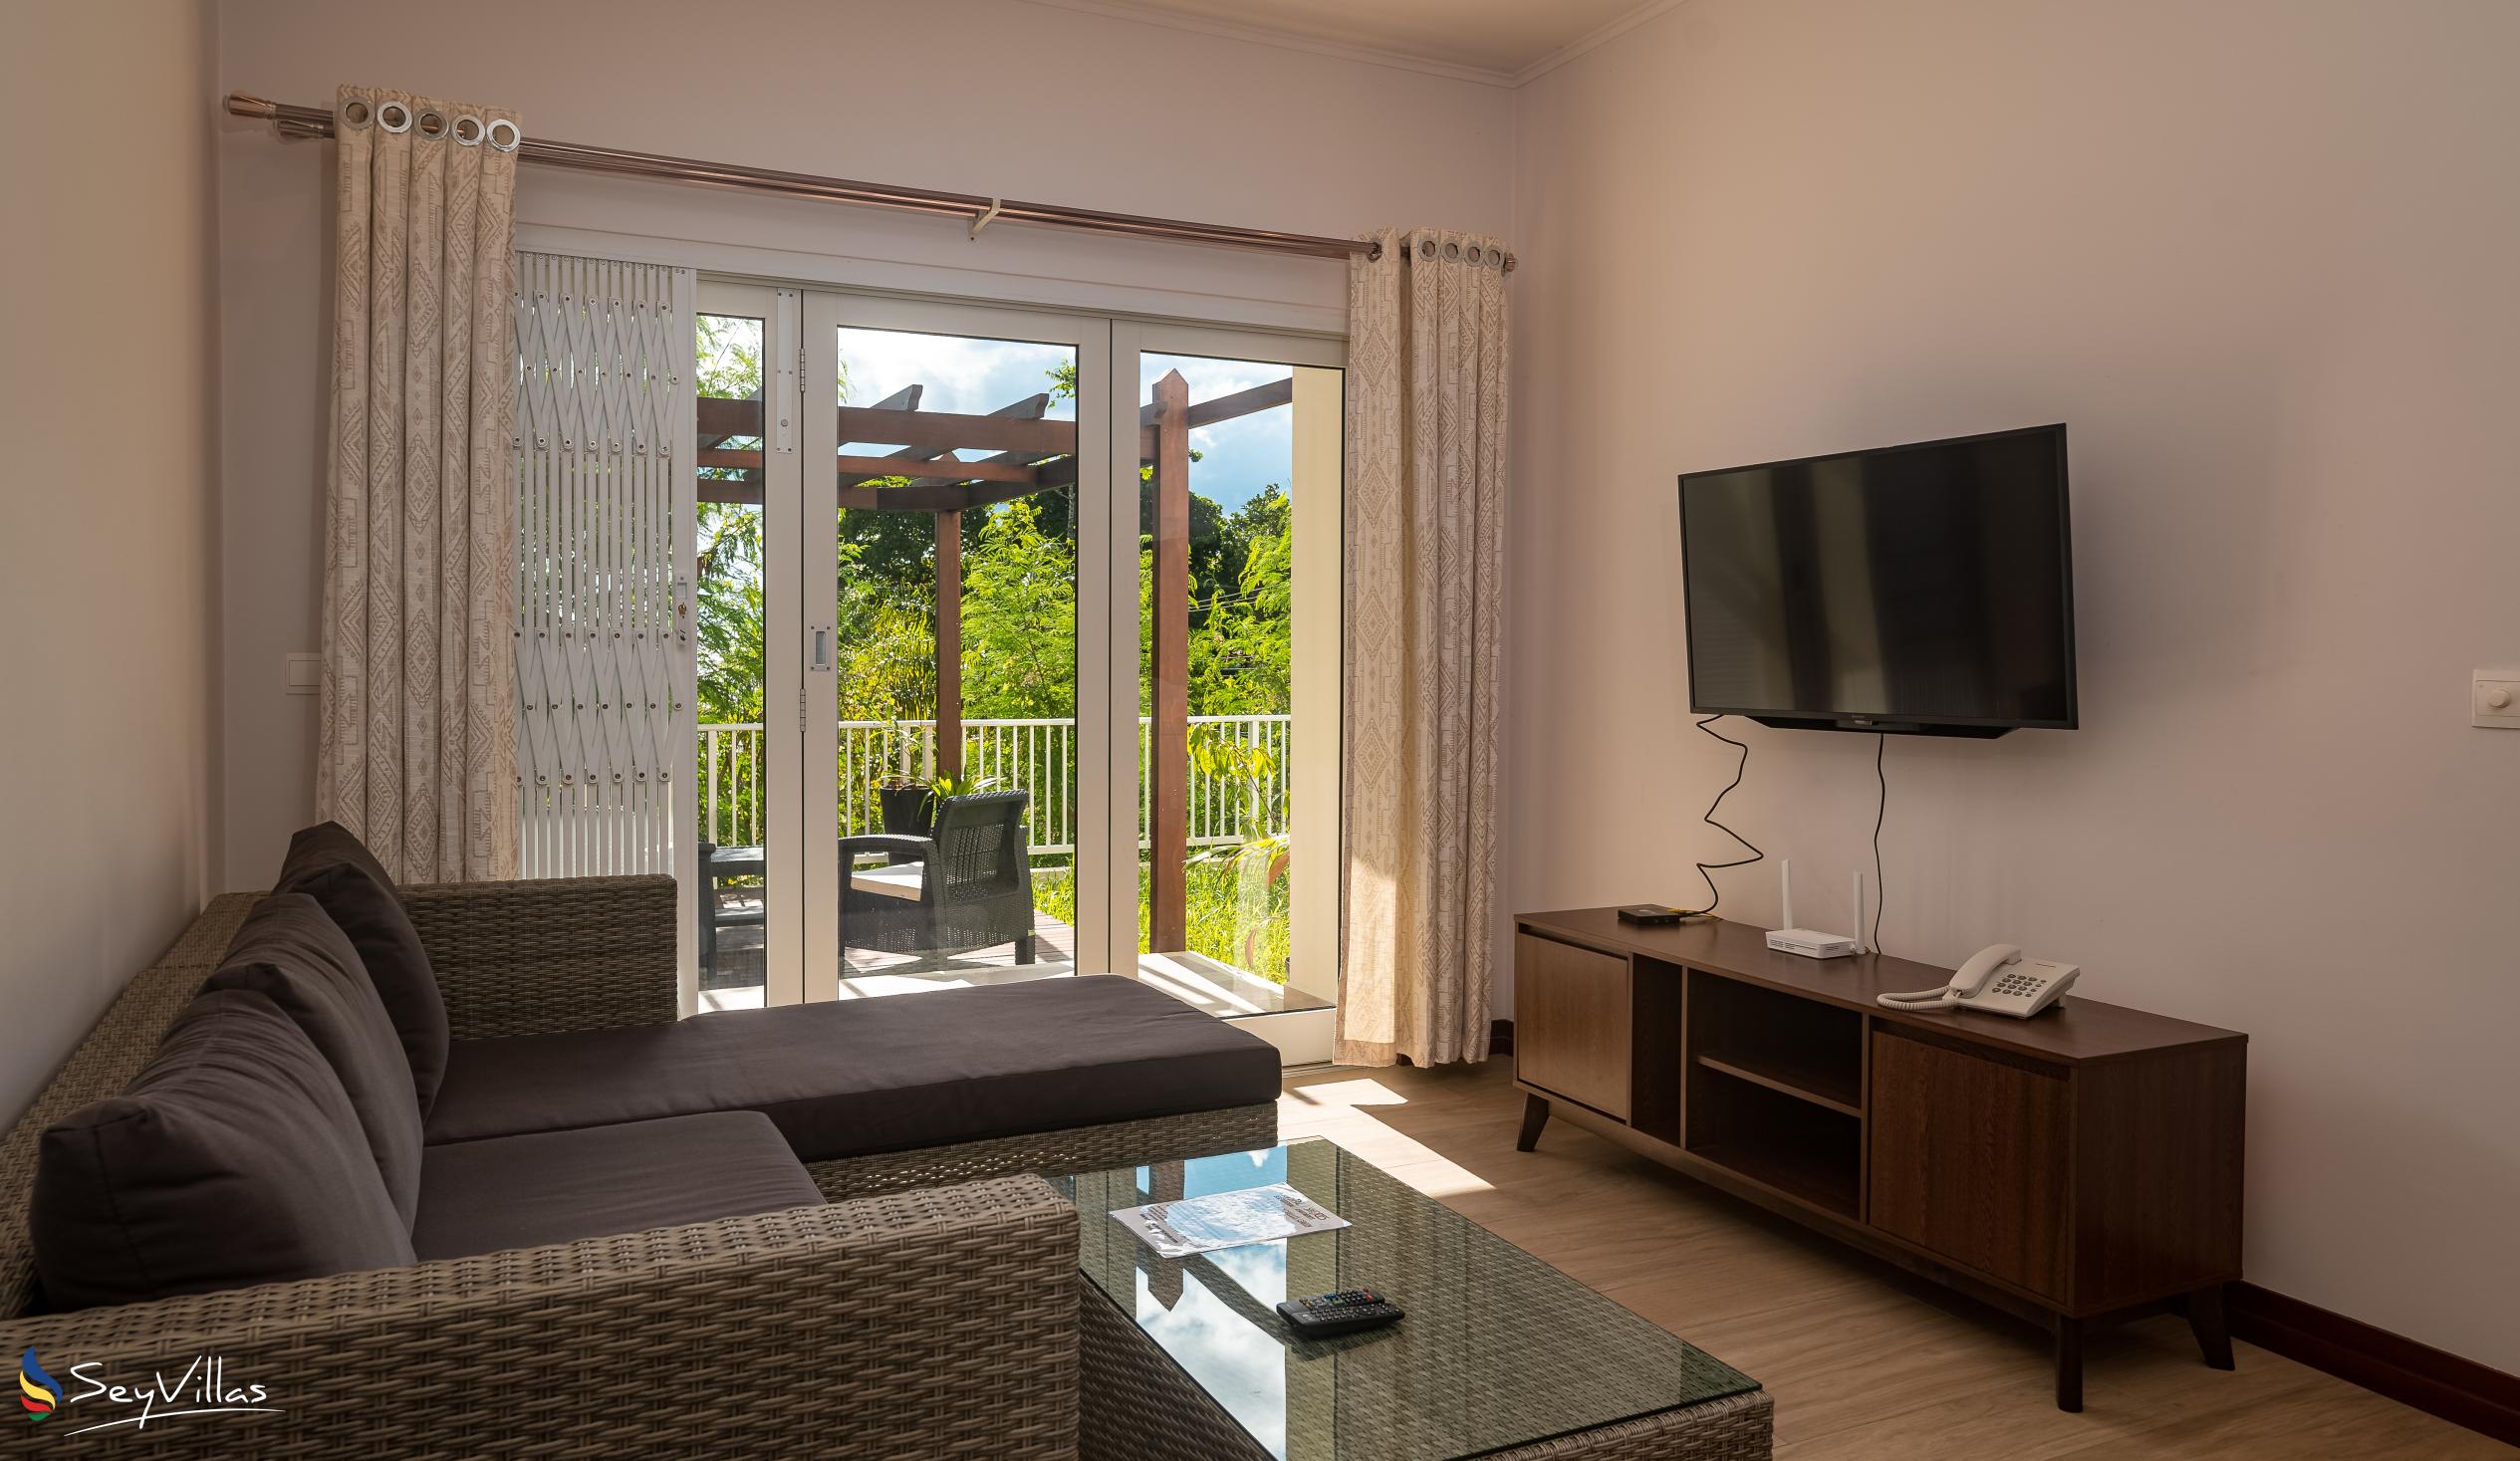 Foto 55: Crystal Shores Self Catering Apartments - Appartement avec vue sur le jardin - Mahé (Seychelles)